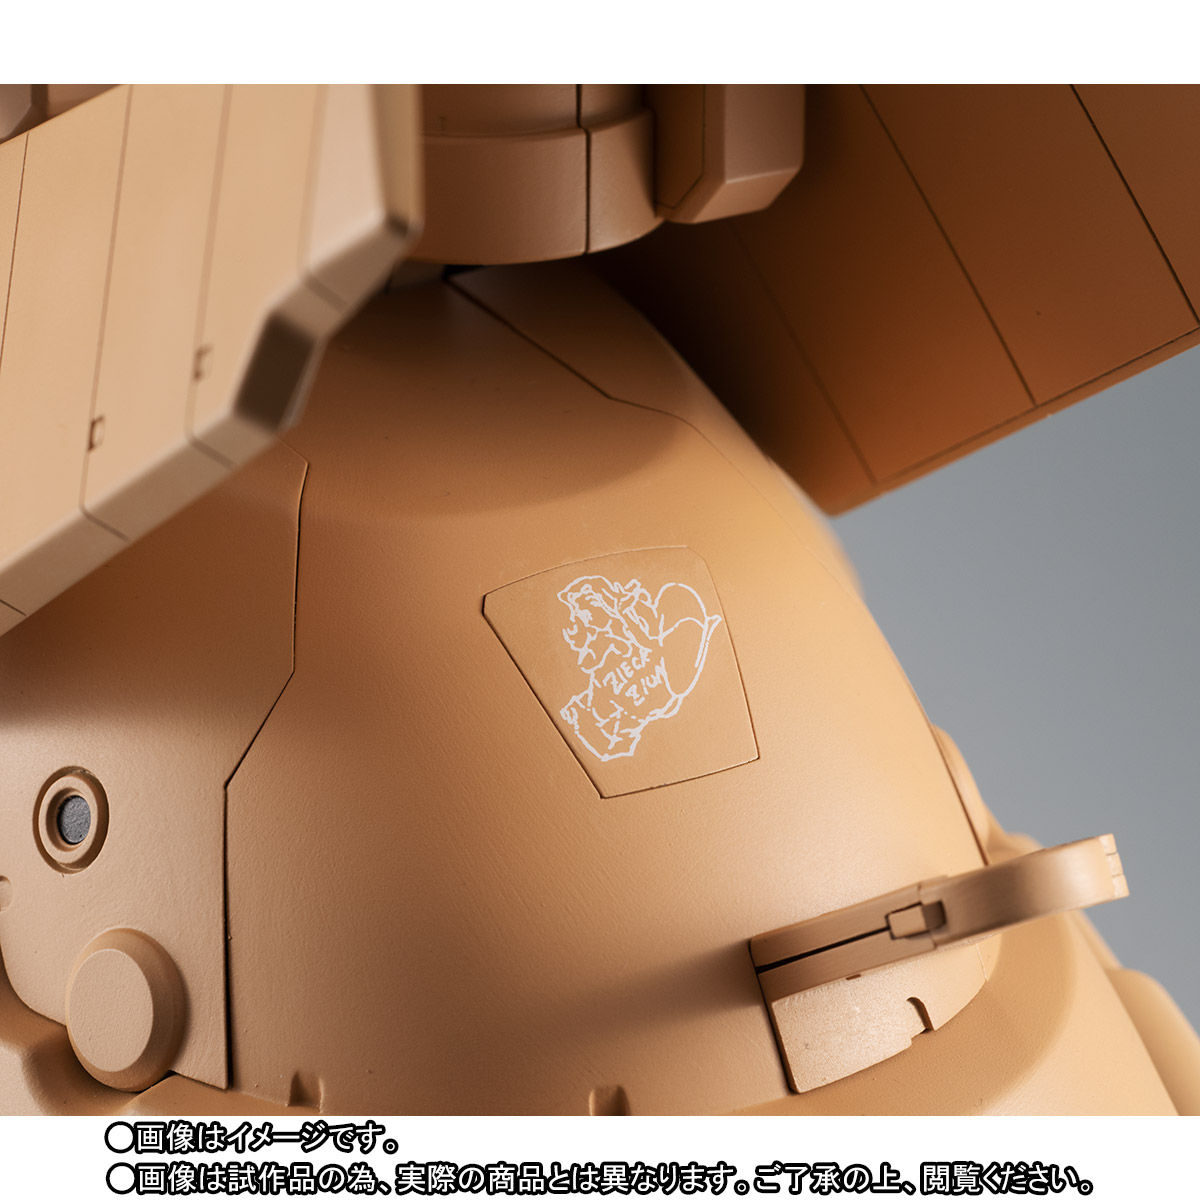 Robot魂 Side Ms Yms 16m ザメル Ver A N I M E 機動戦士ガンダム00 趣味 コレクション プレミアムバンダイ公式通販